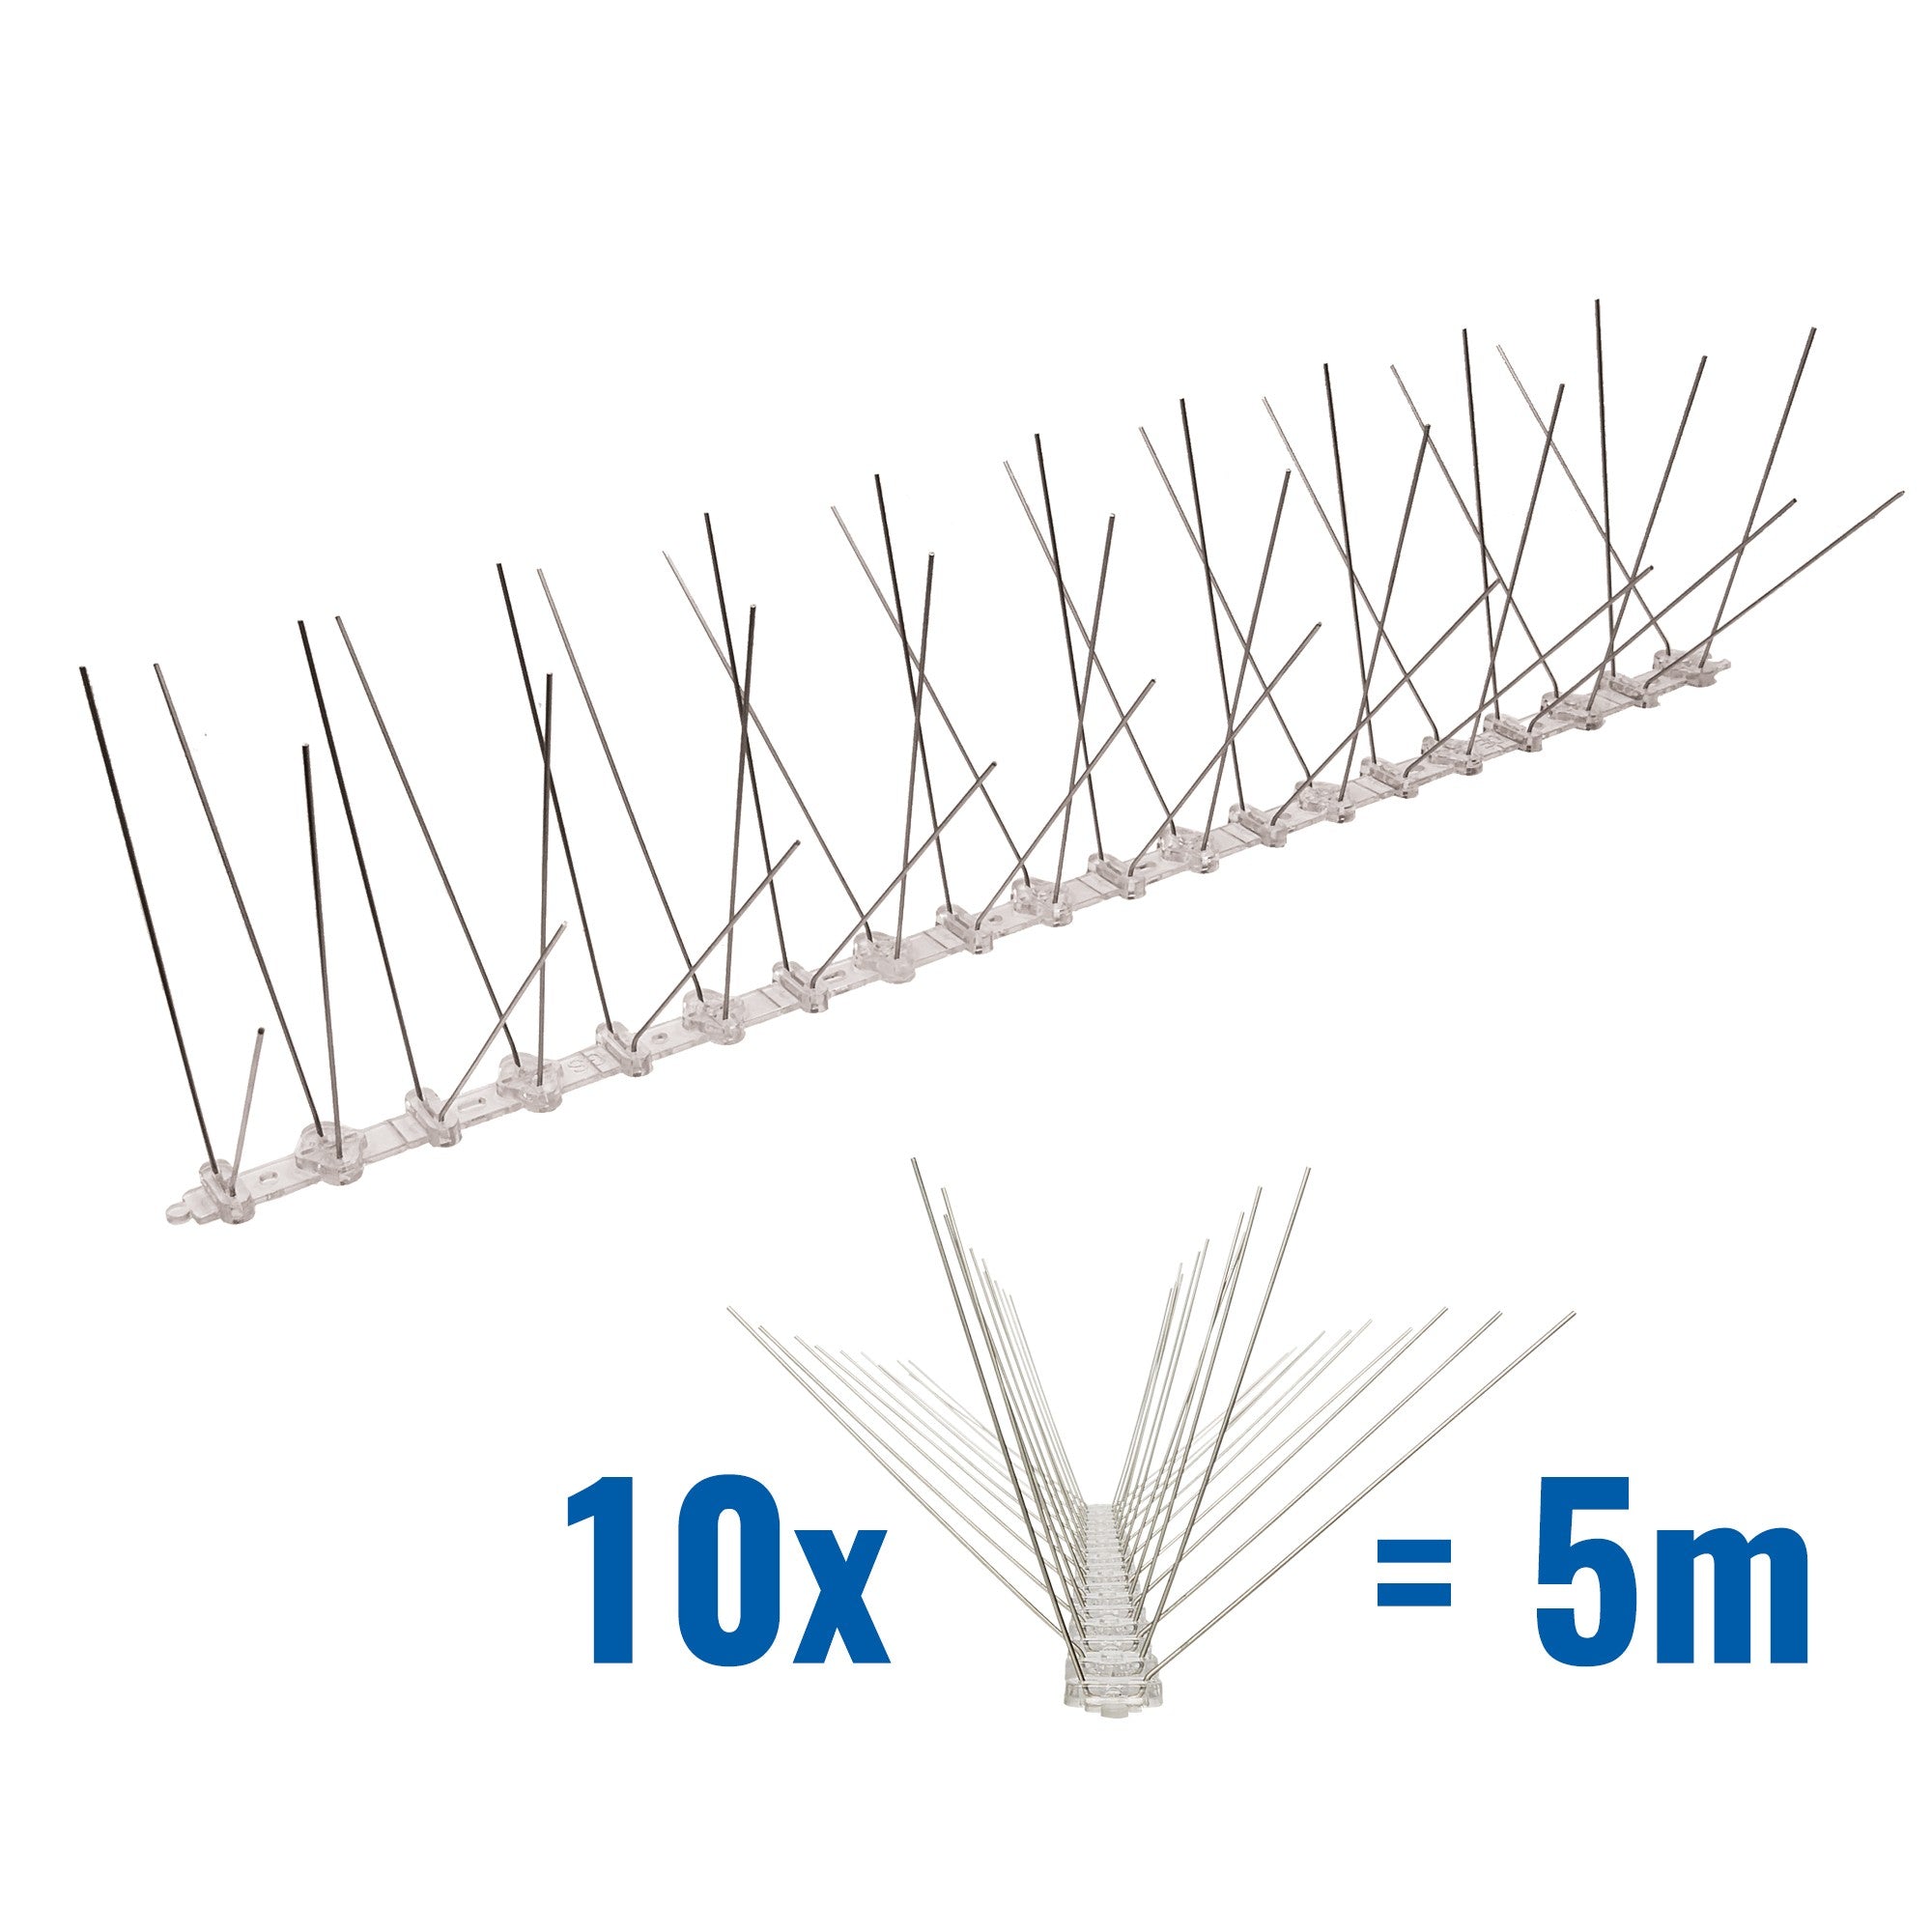 5 Meter (10 x 0,5m) Taubenspikes 4-reihig auf Polycarbonat - hochwertige Lösung für Vogelabwehr Taubenabwehr Spikes